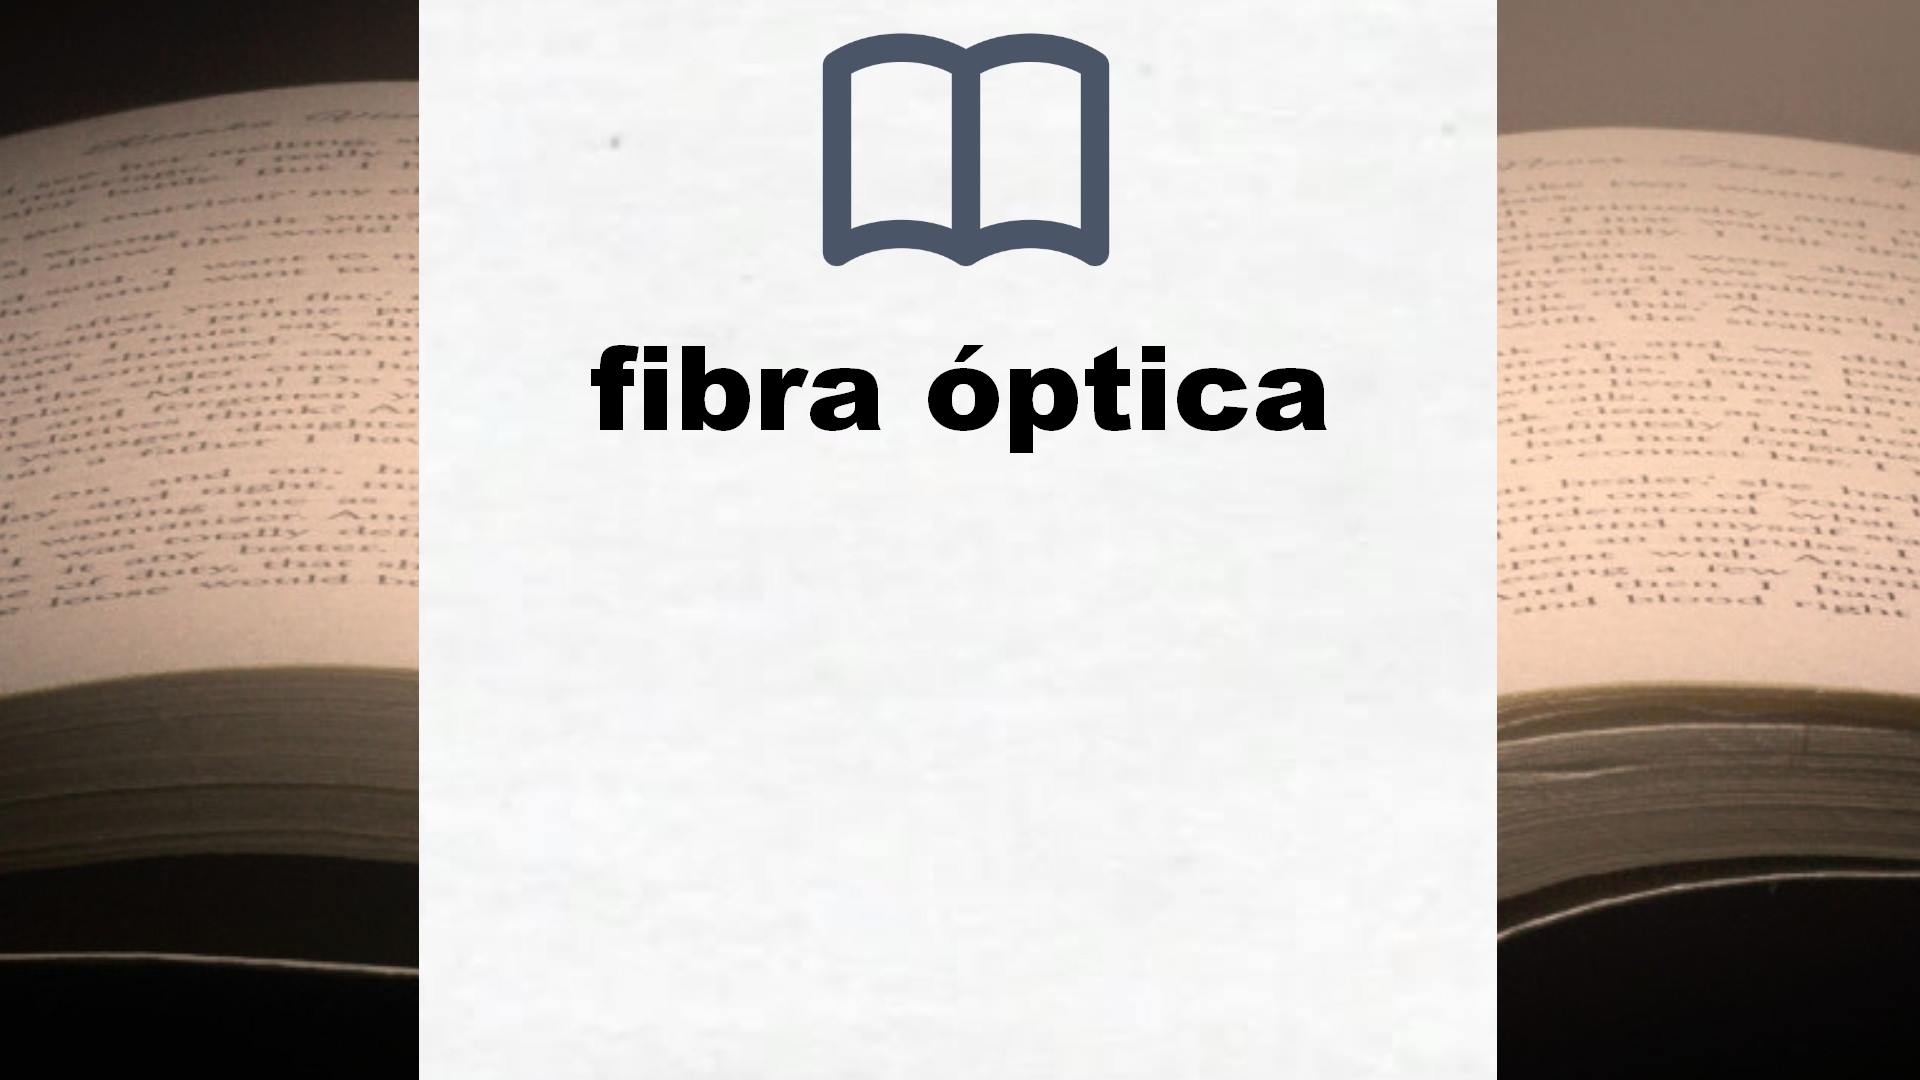 Libros sobre fibra óptica